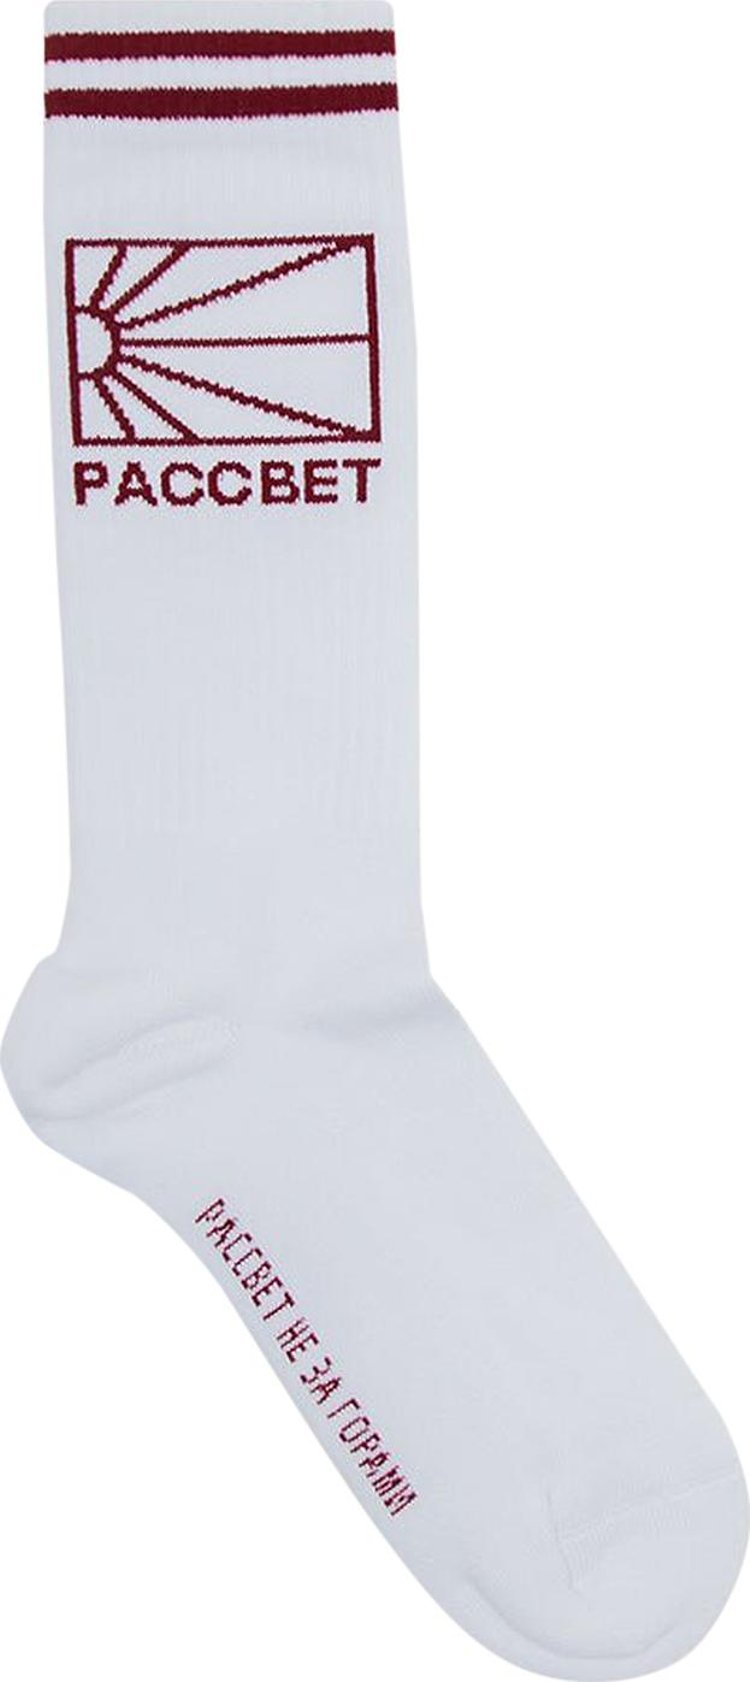 Rassvet x PACCBET Logo Knit Socks 'White'